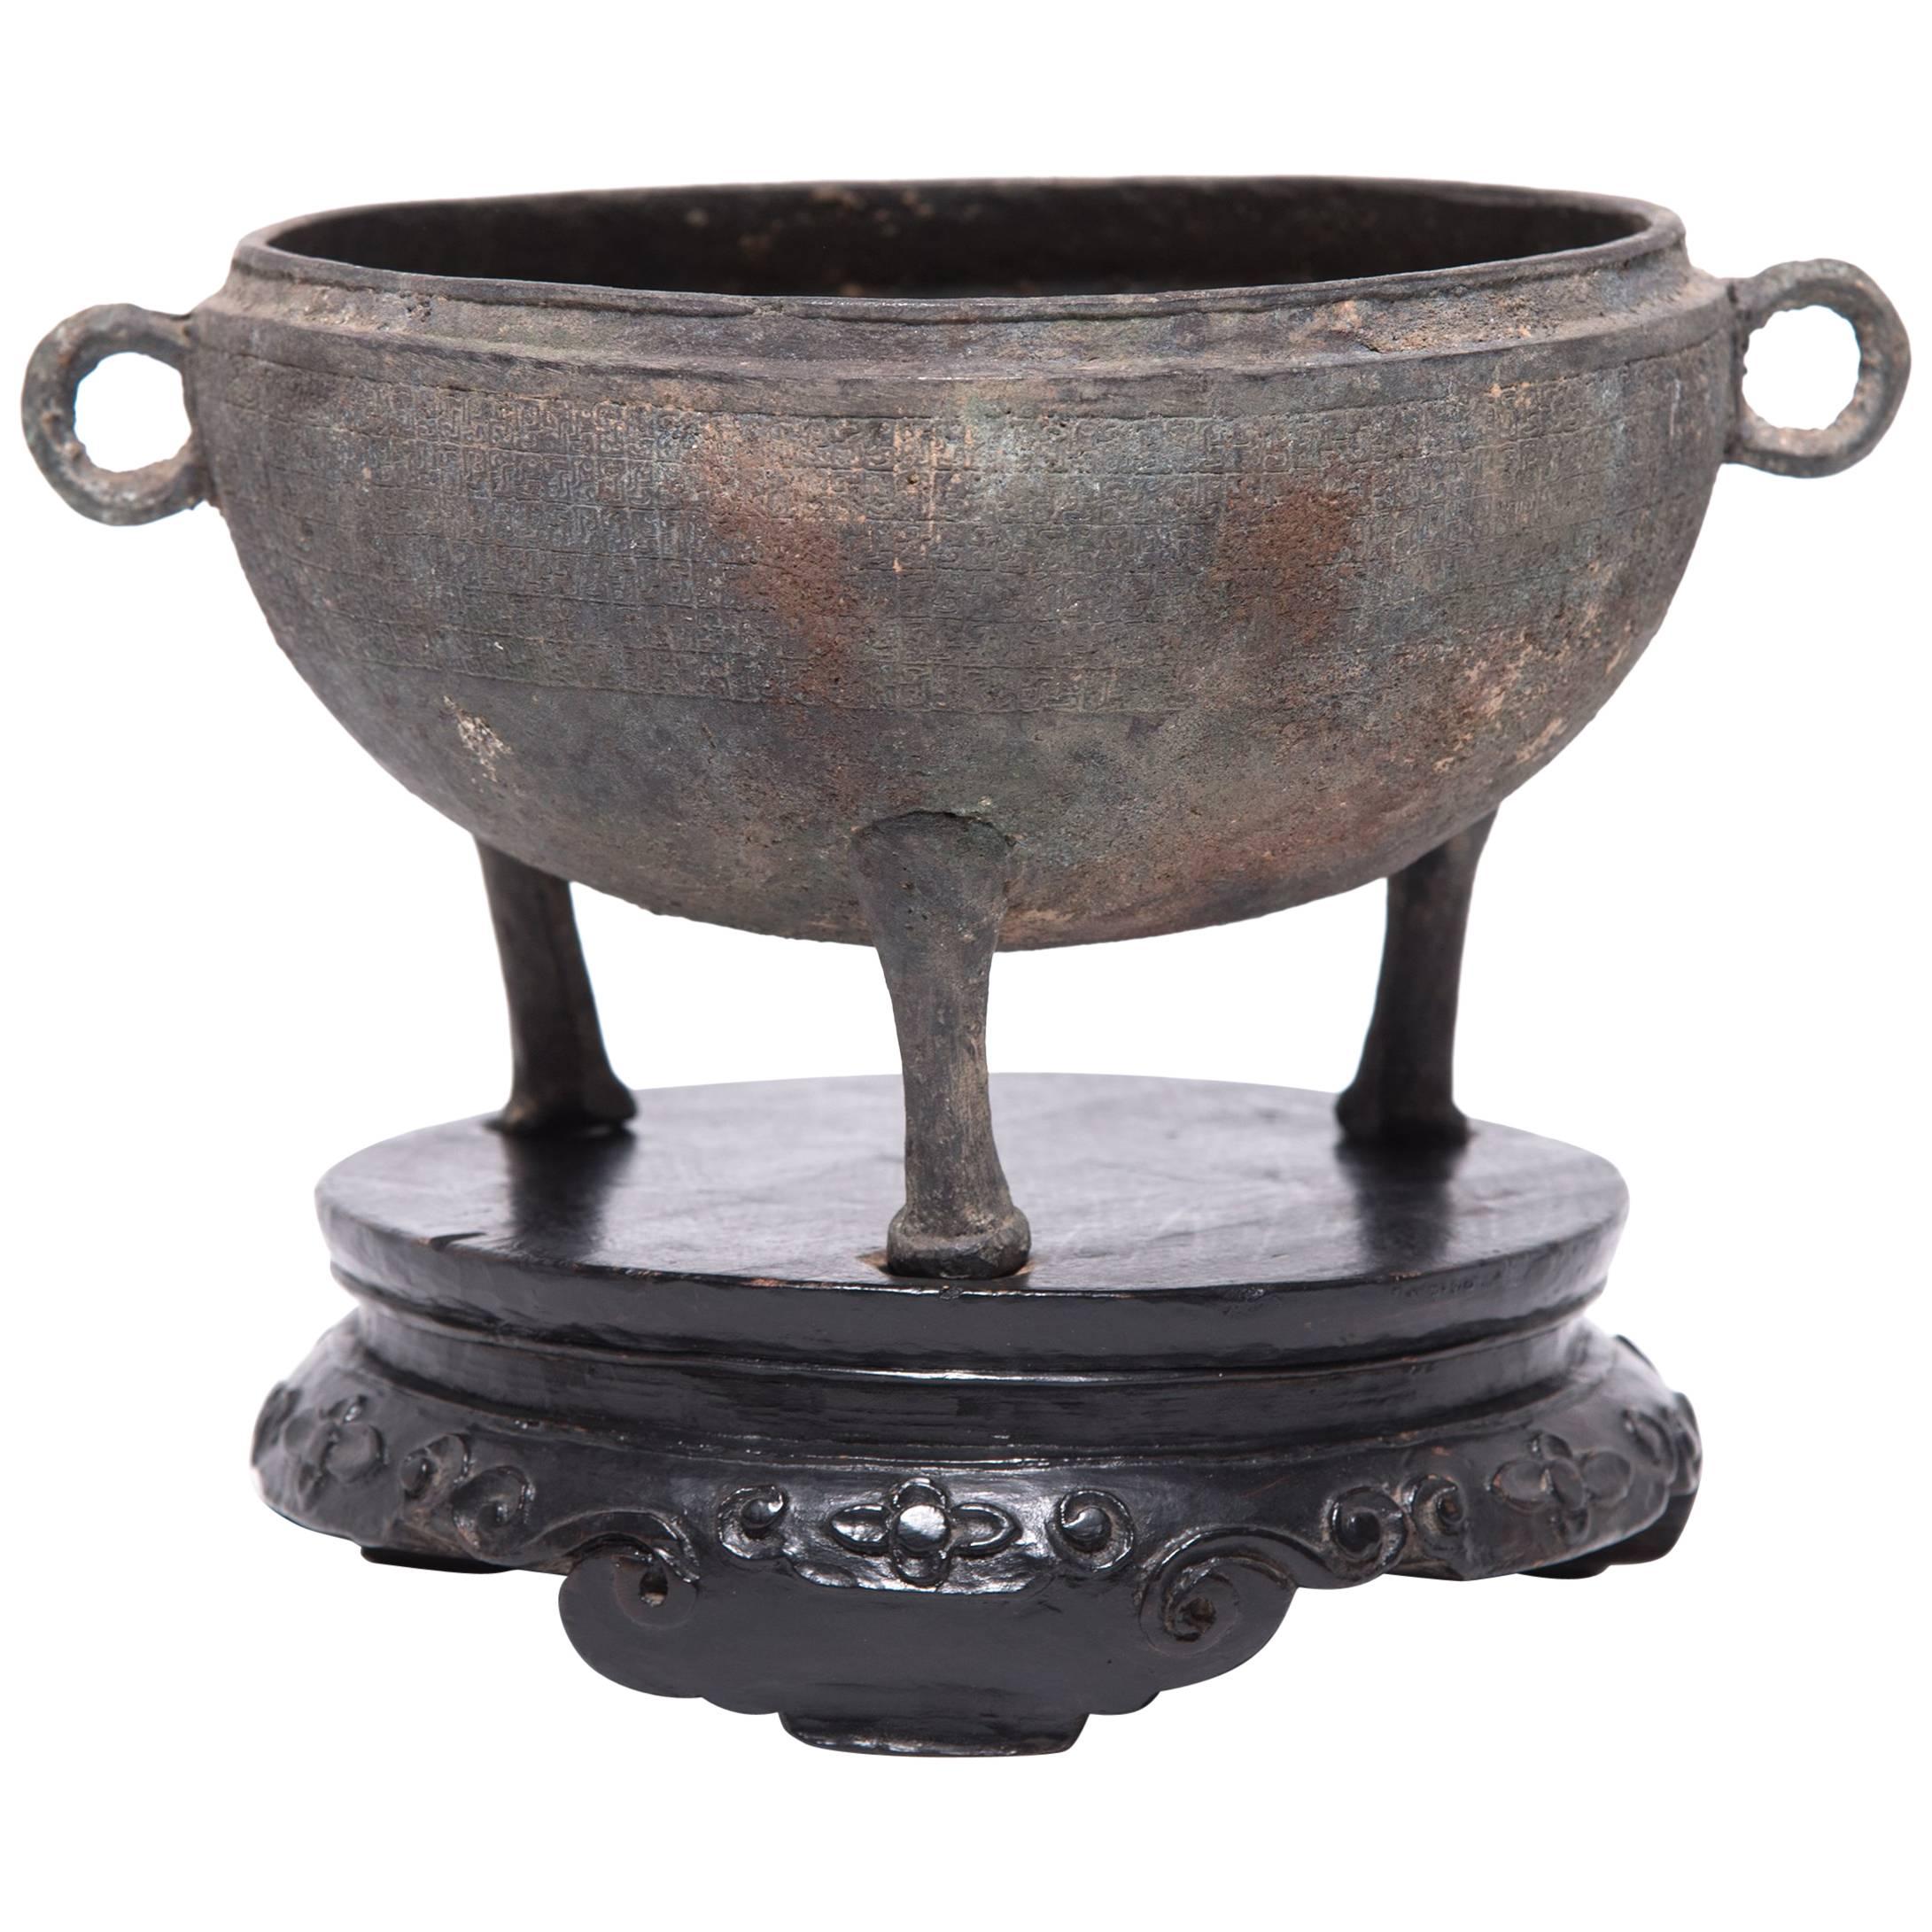 Chinesisches Bronzegefäß mit Dreibein-Füßen aus Bronze, um 1750